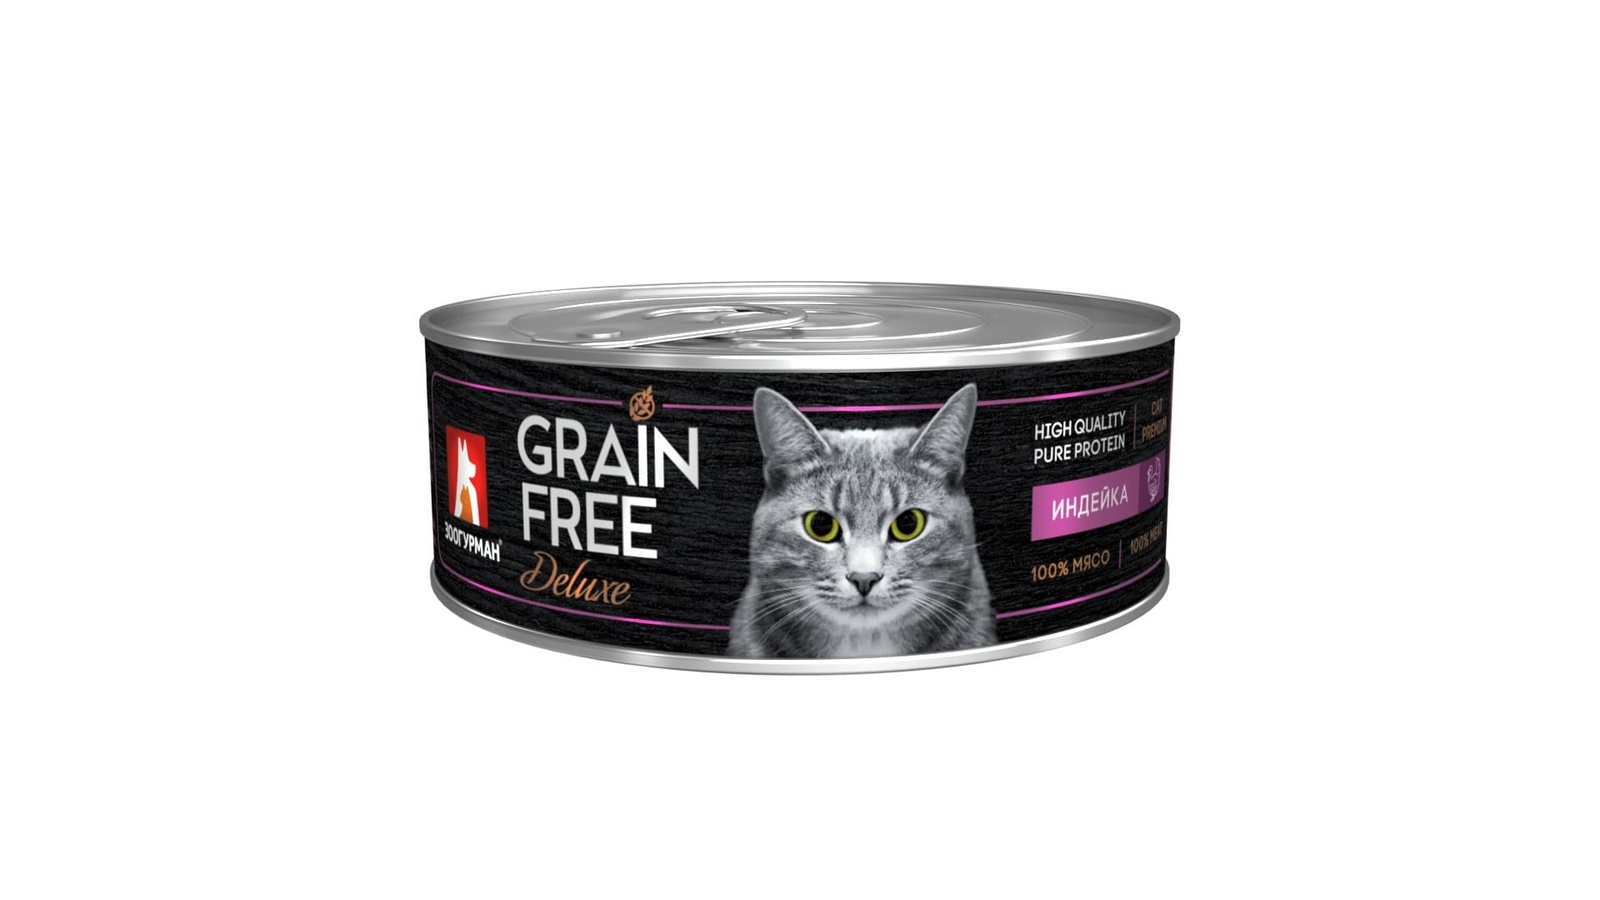 Зоогурман Зоогурман консервы для кошек GRAIN FREE со вкусом индейки (100 г) зоогурман зоогурман консервы для кошек grain free со вкусом индейки 100 г